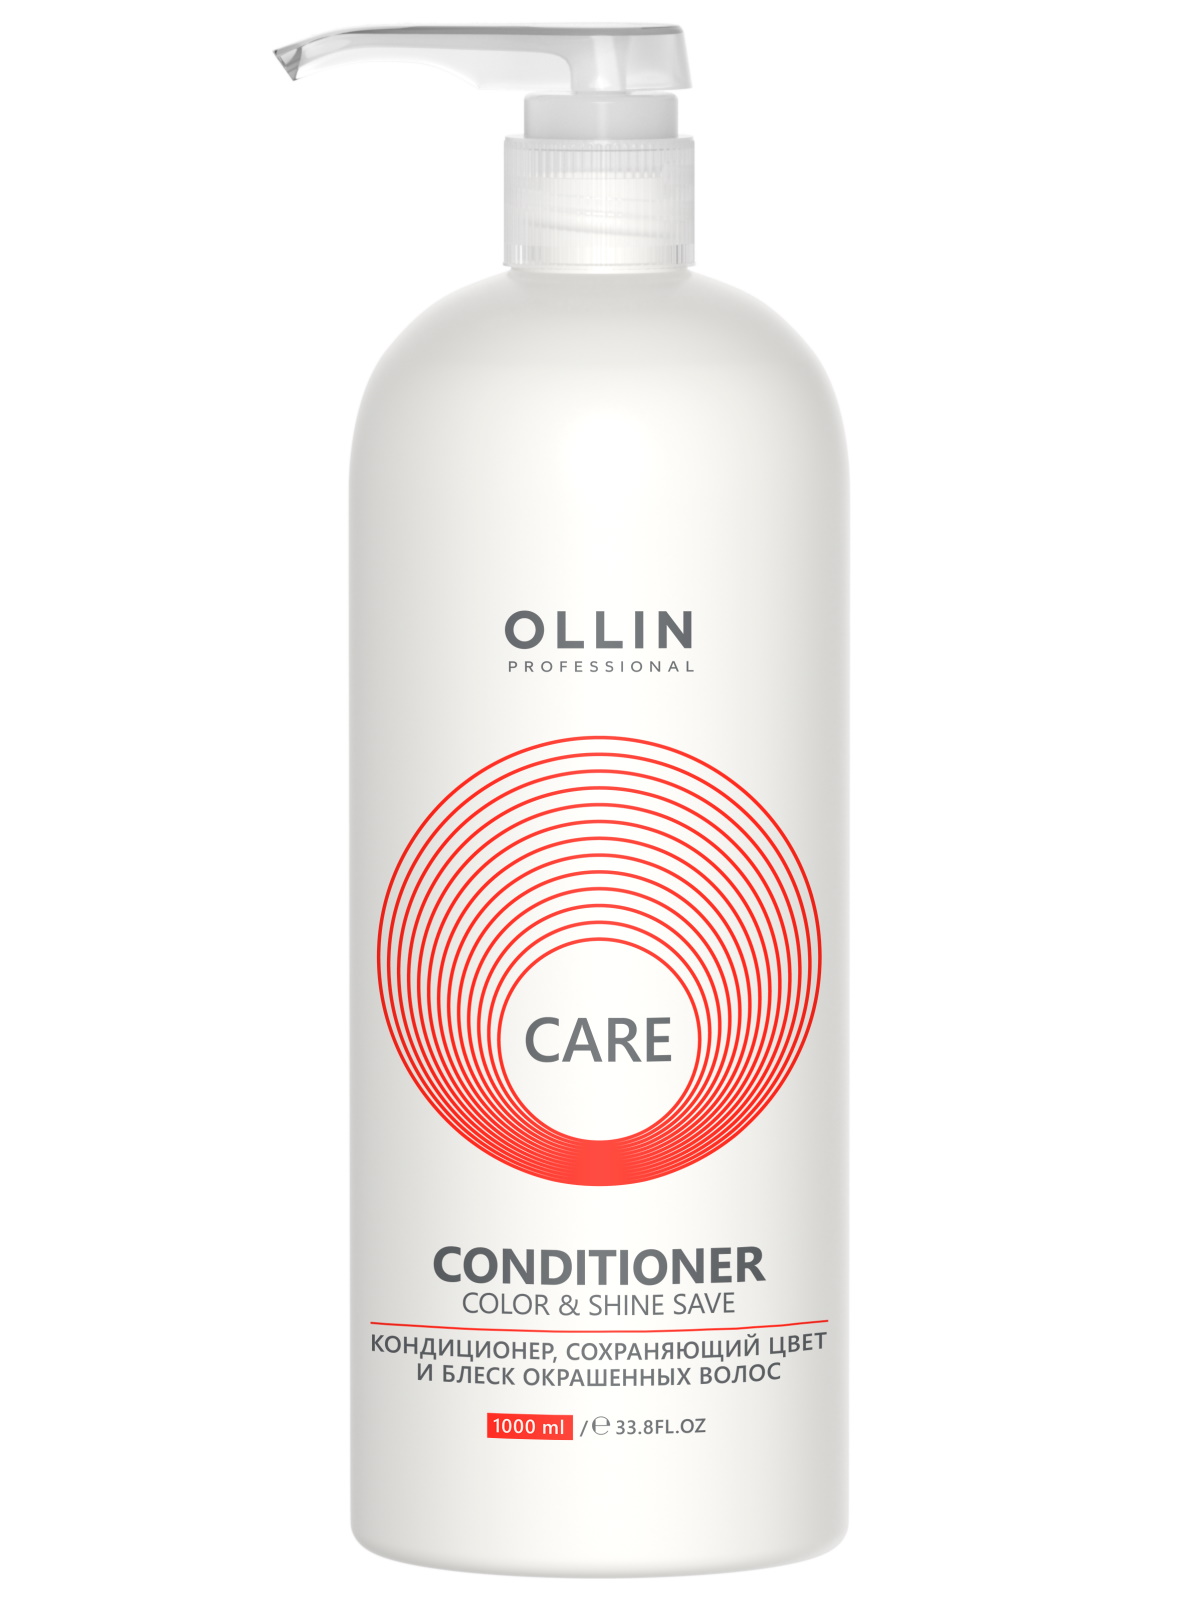 Кондиционер для волос Ollin Professional Care Color & Shine Save 1 л ollin care restore conditioner кондиционер для восстановления структуры волос 200 мл